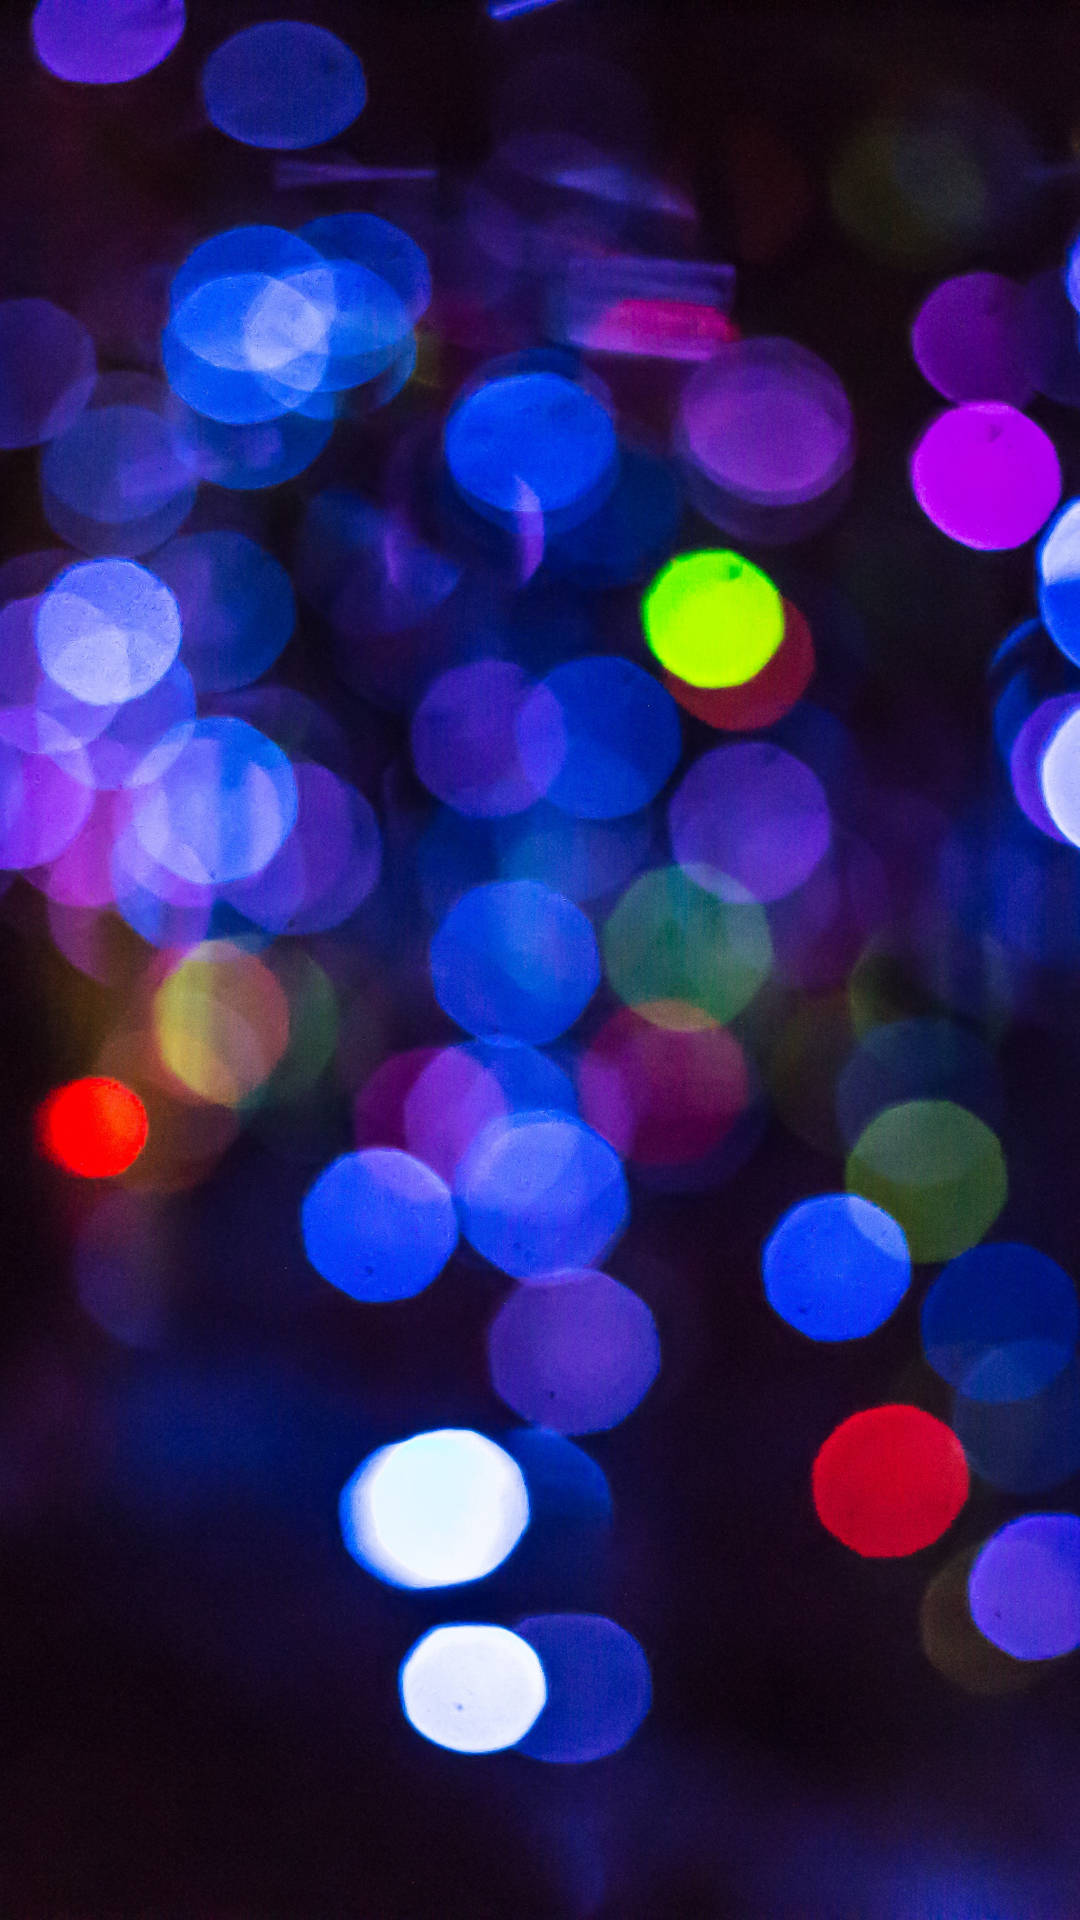 Dslr Blur Cool Neon Lights Wallpaper